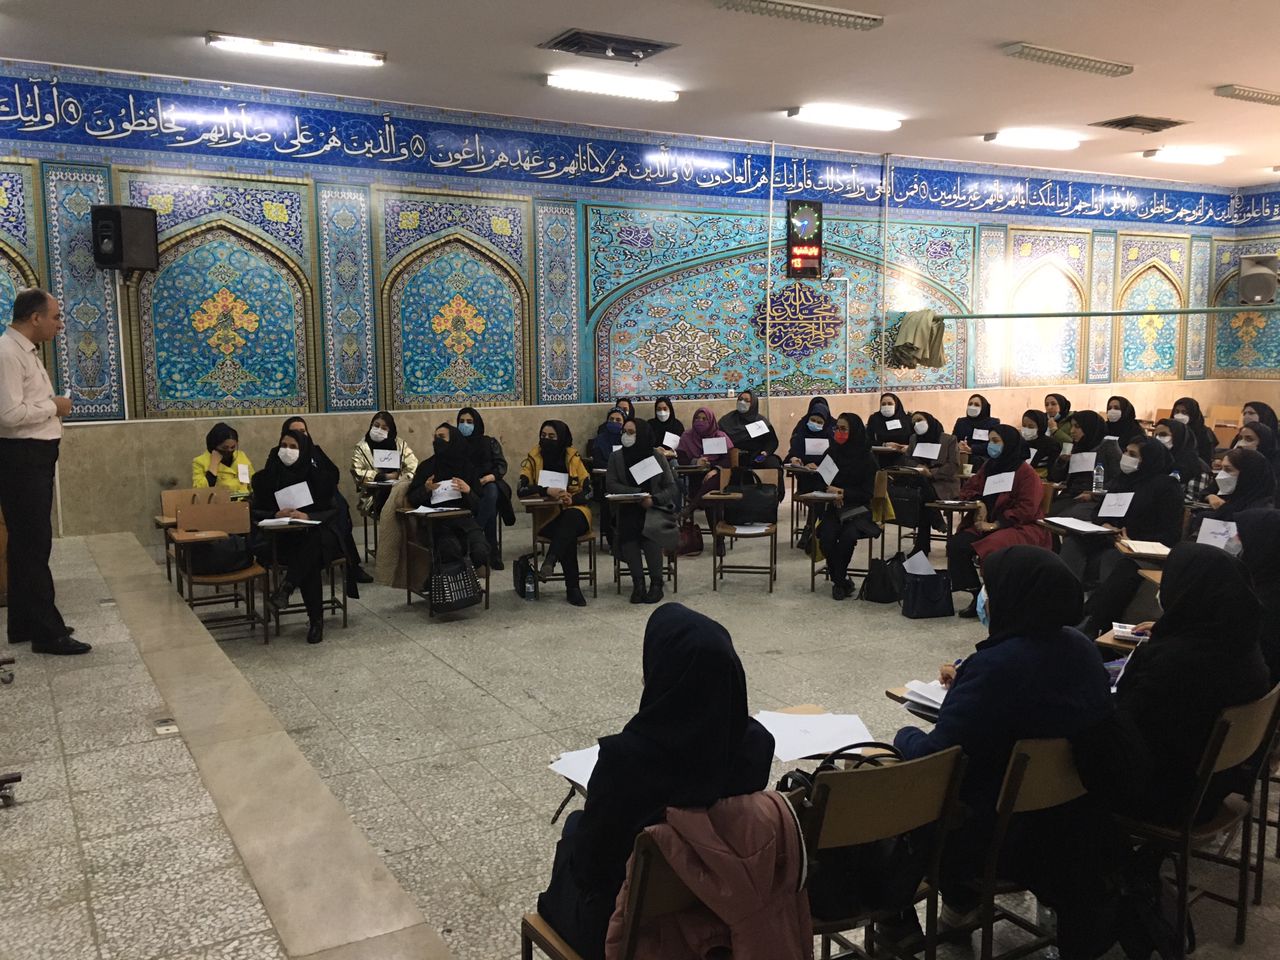 کارگاه آموزشی فلسفه برای کودکان در سمای استان اصفهان برگزار شد